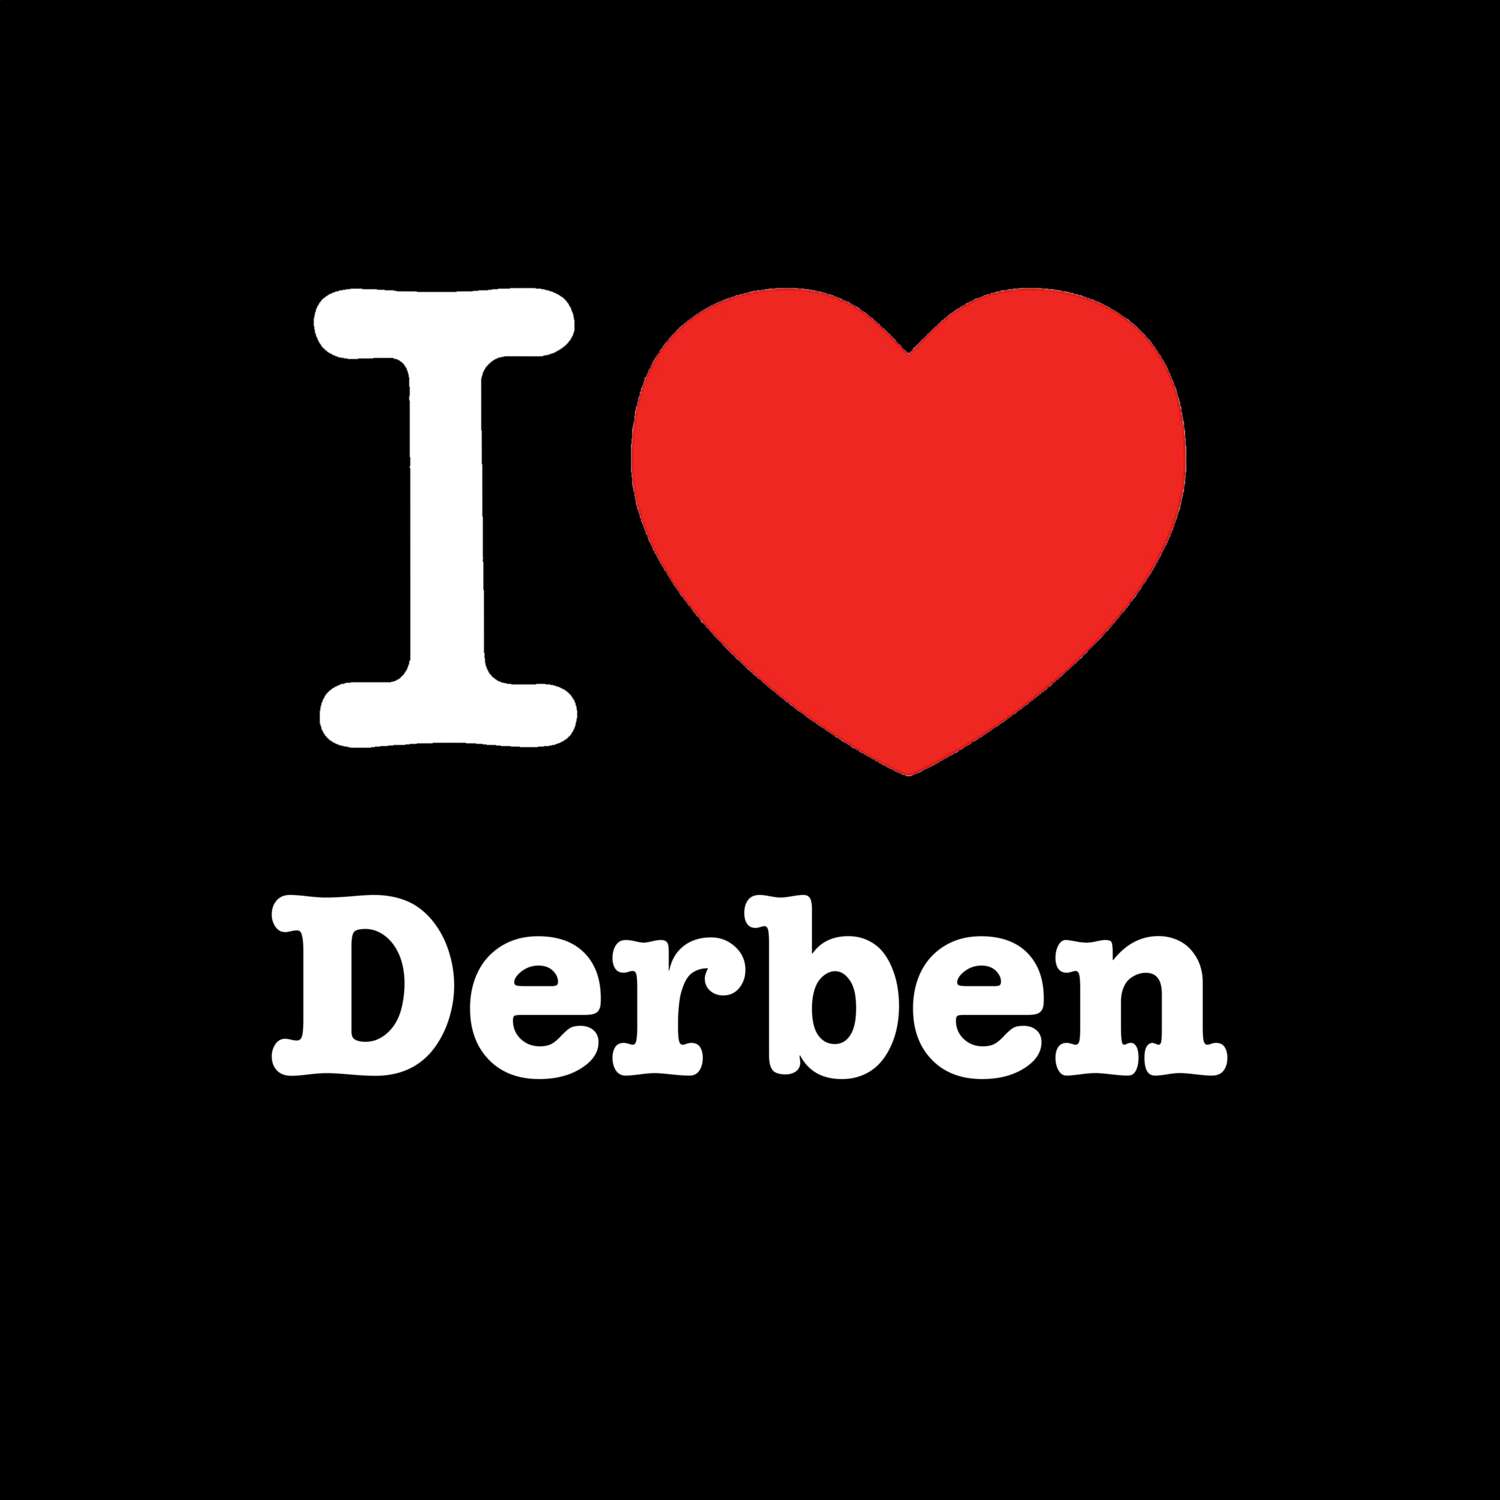 Derben T-Shirt »I love«